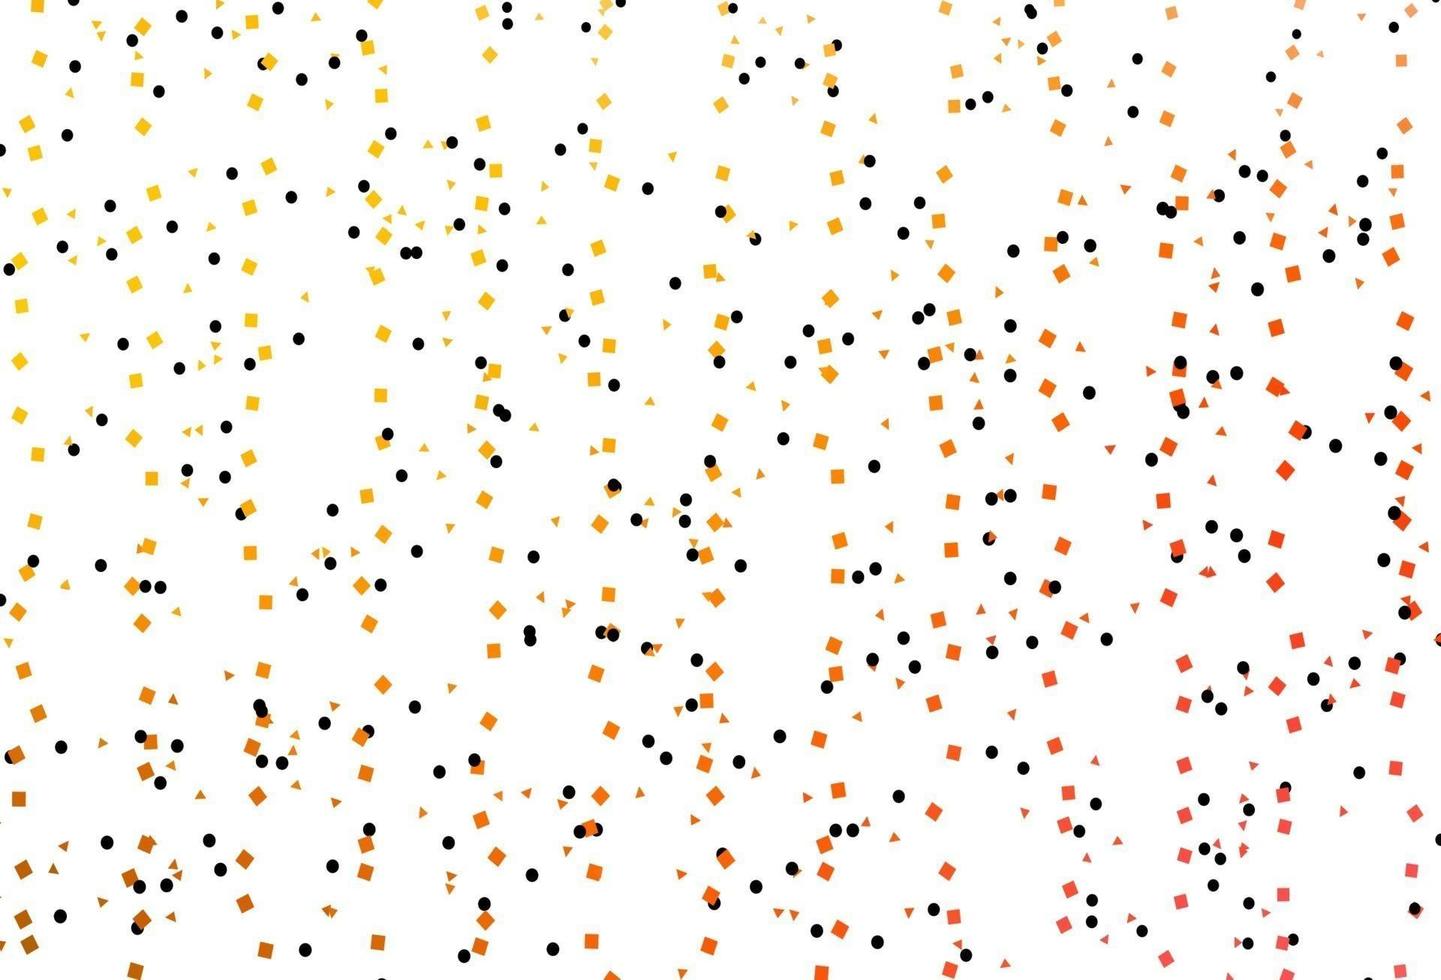 ljusgul, orange vektor layout med cirklar, linjer, rektanglar.